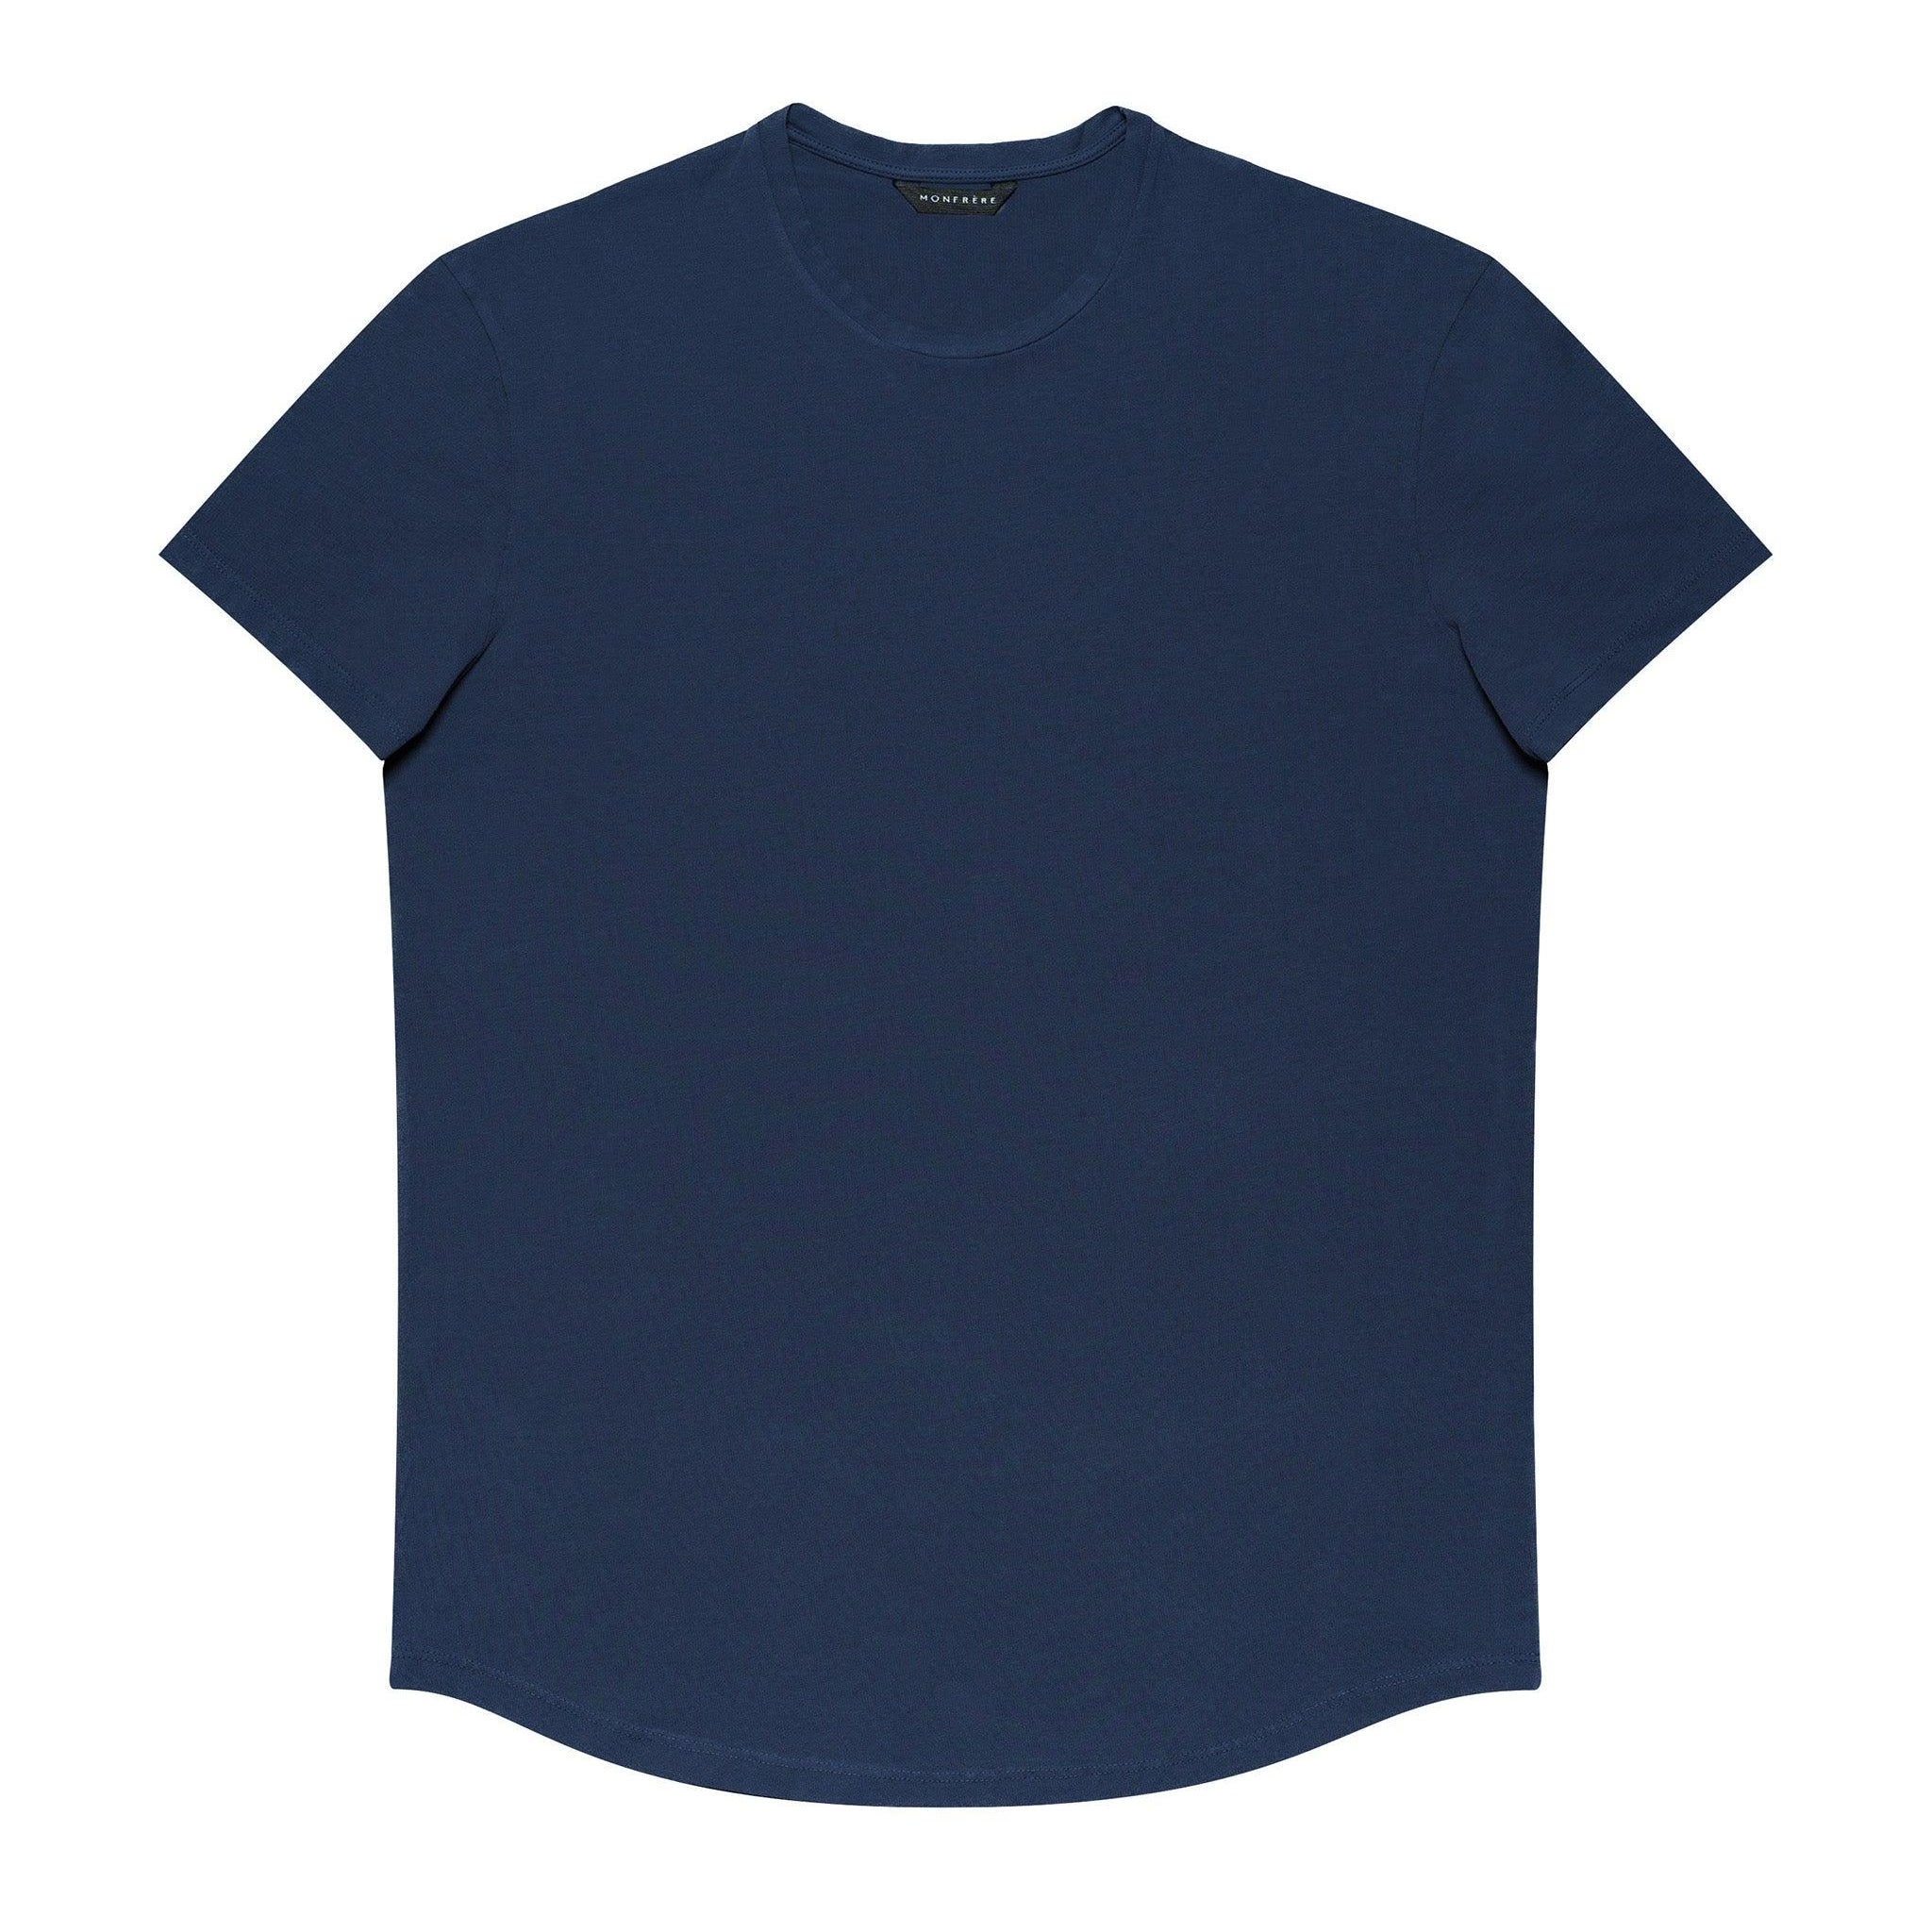 Dann Shirt Bleu - MONFRÈRE